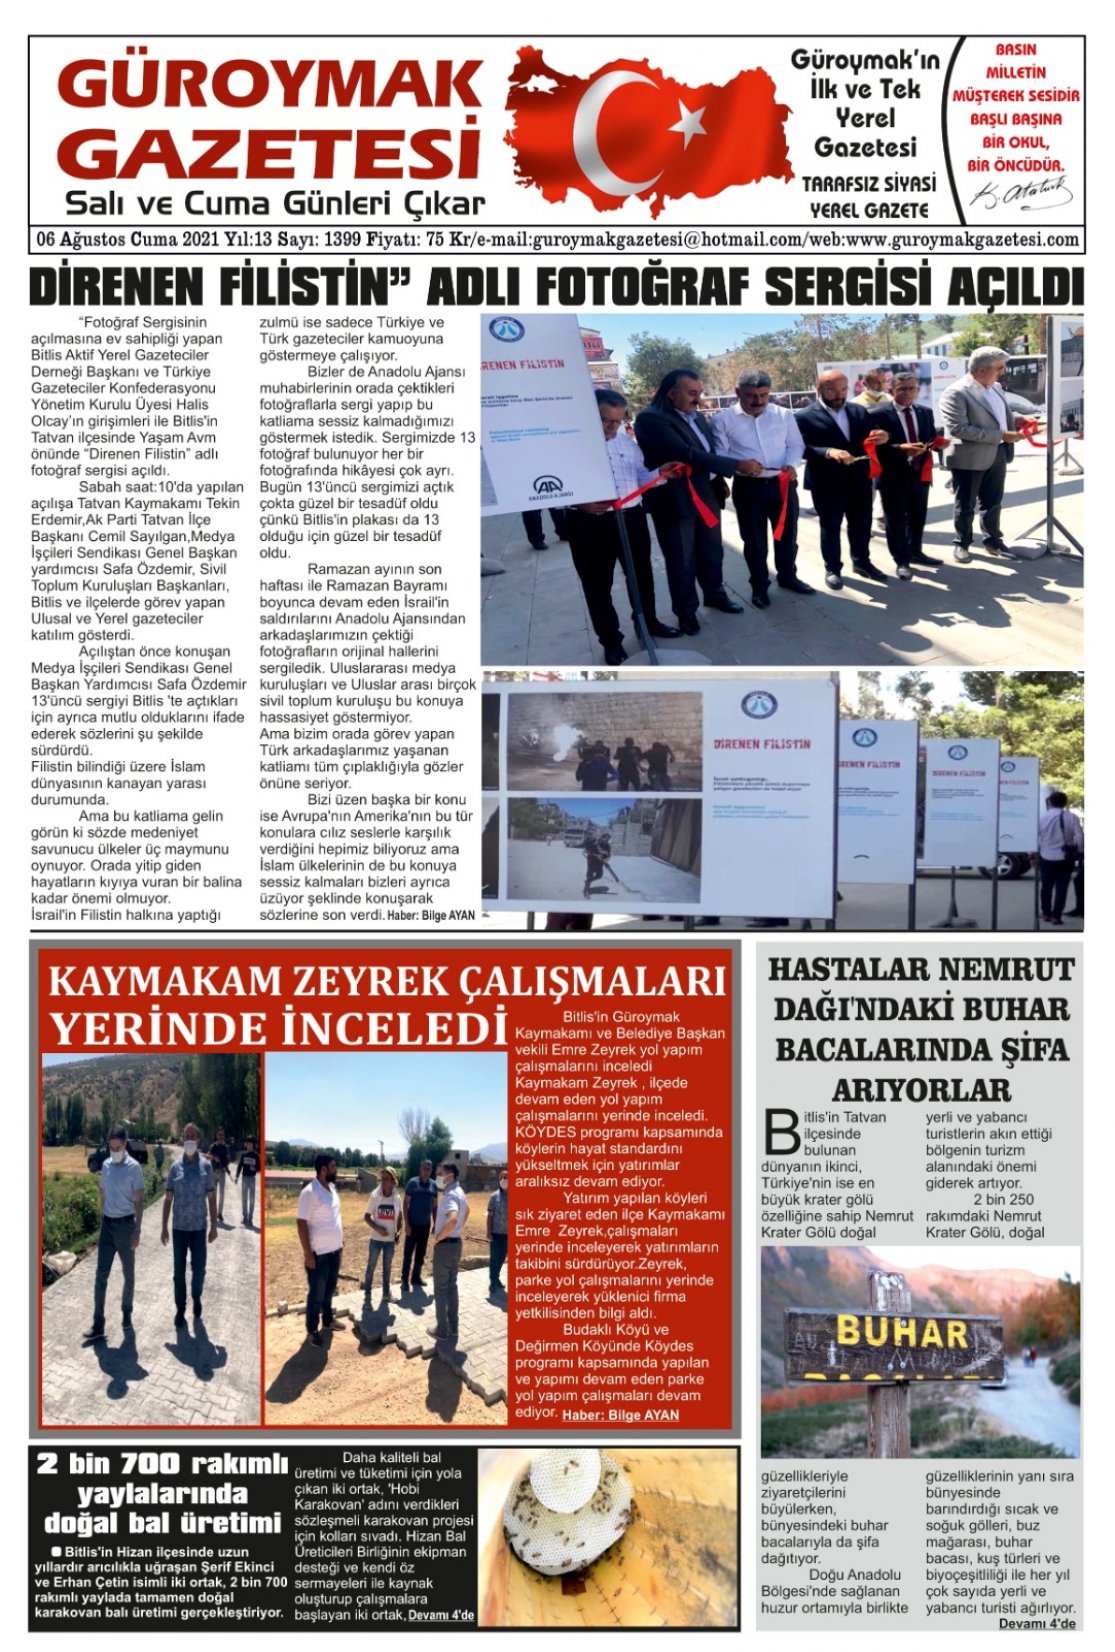 Güroymak Gazetesi 1.jpeg Sayılı Gazete Küpürü